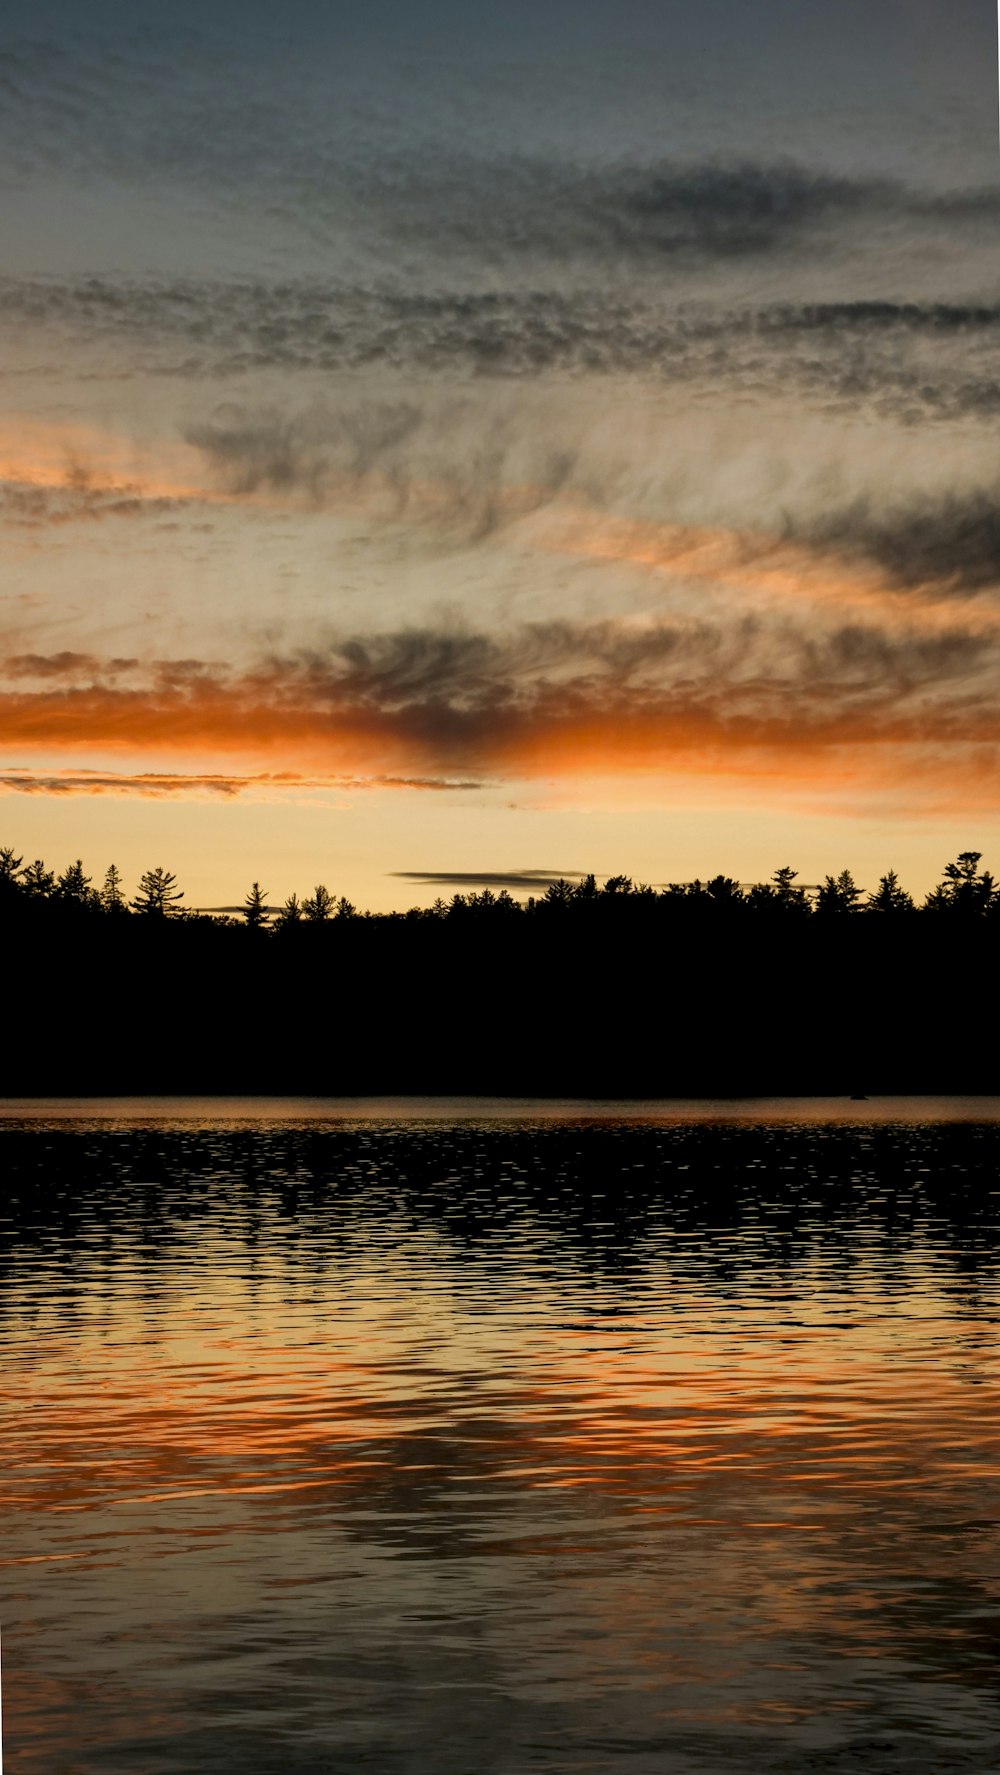 Foto de la silueta de los árboles y del lago durante el amanecer